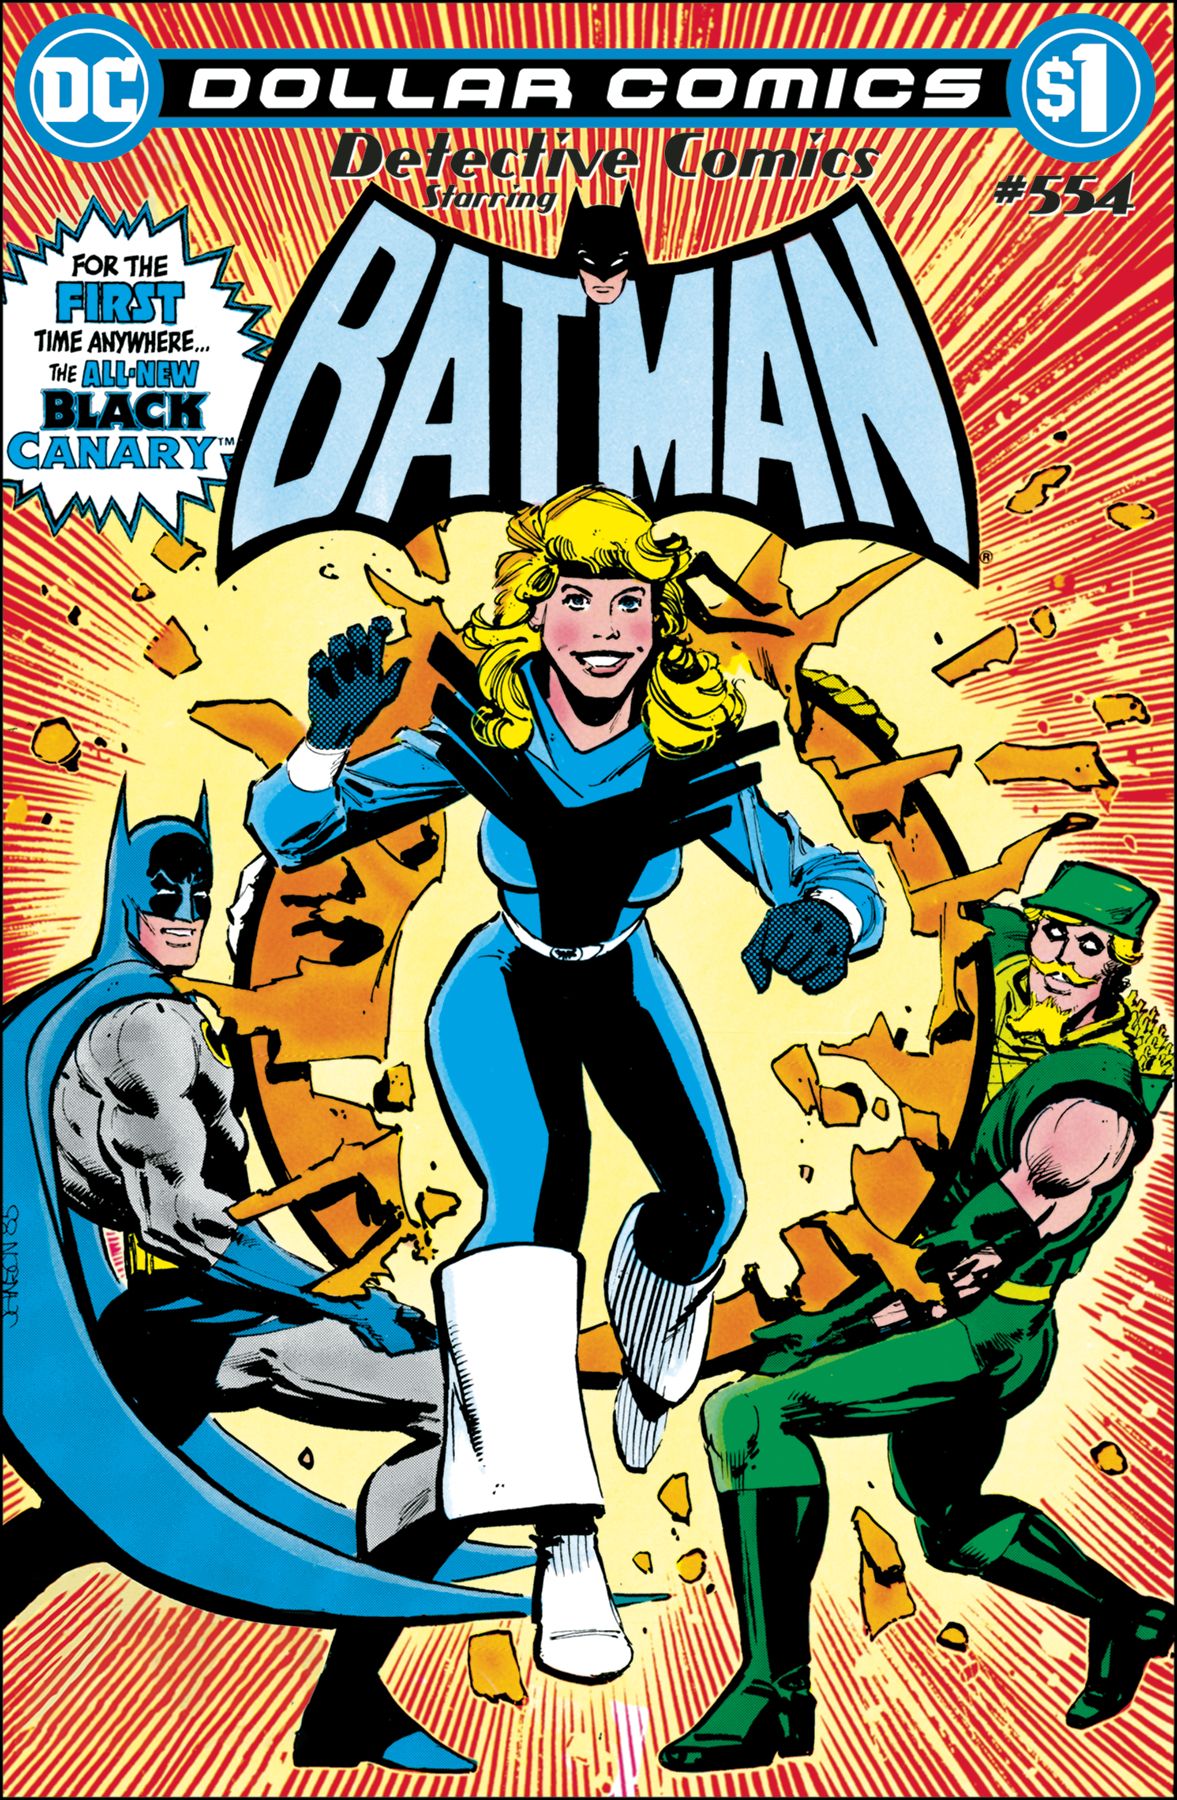 Dollar Comics: Detective Comics #554 Comic